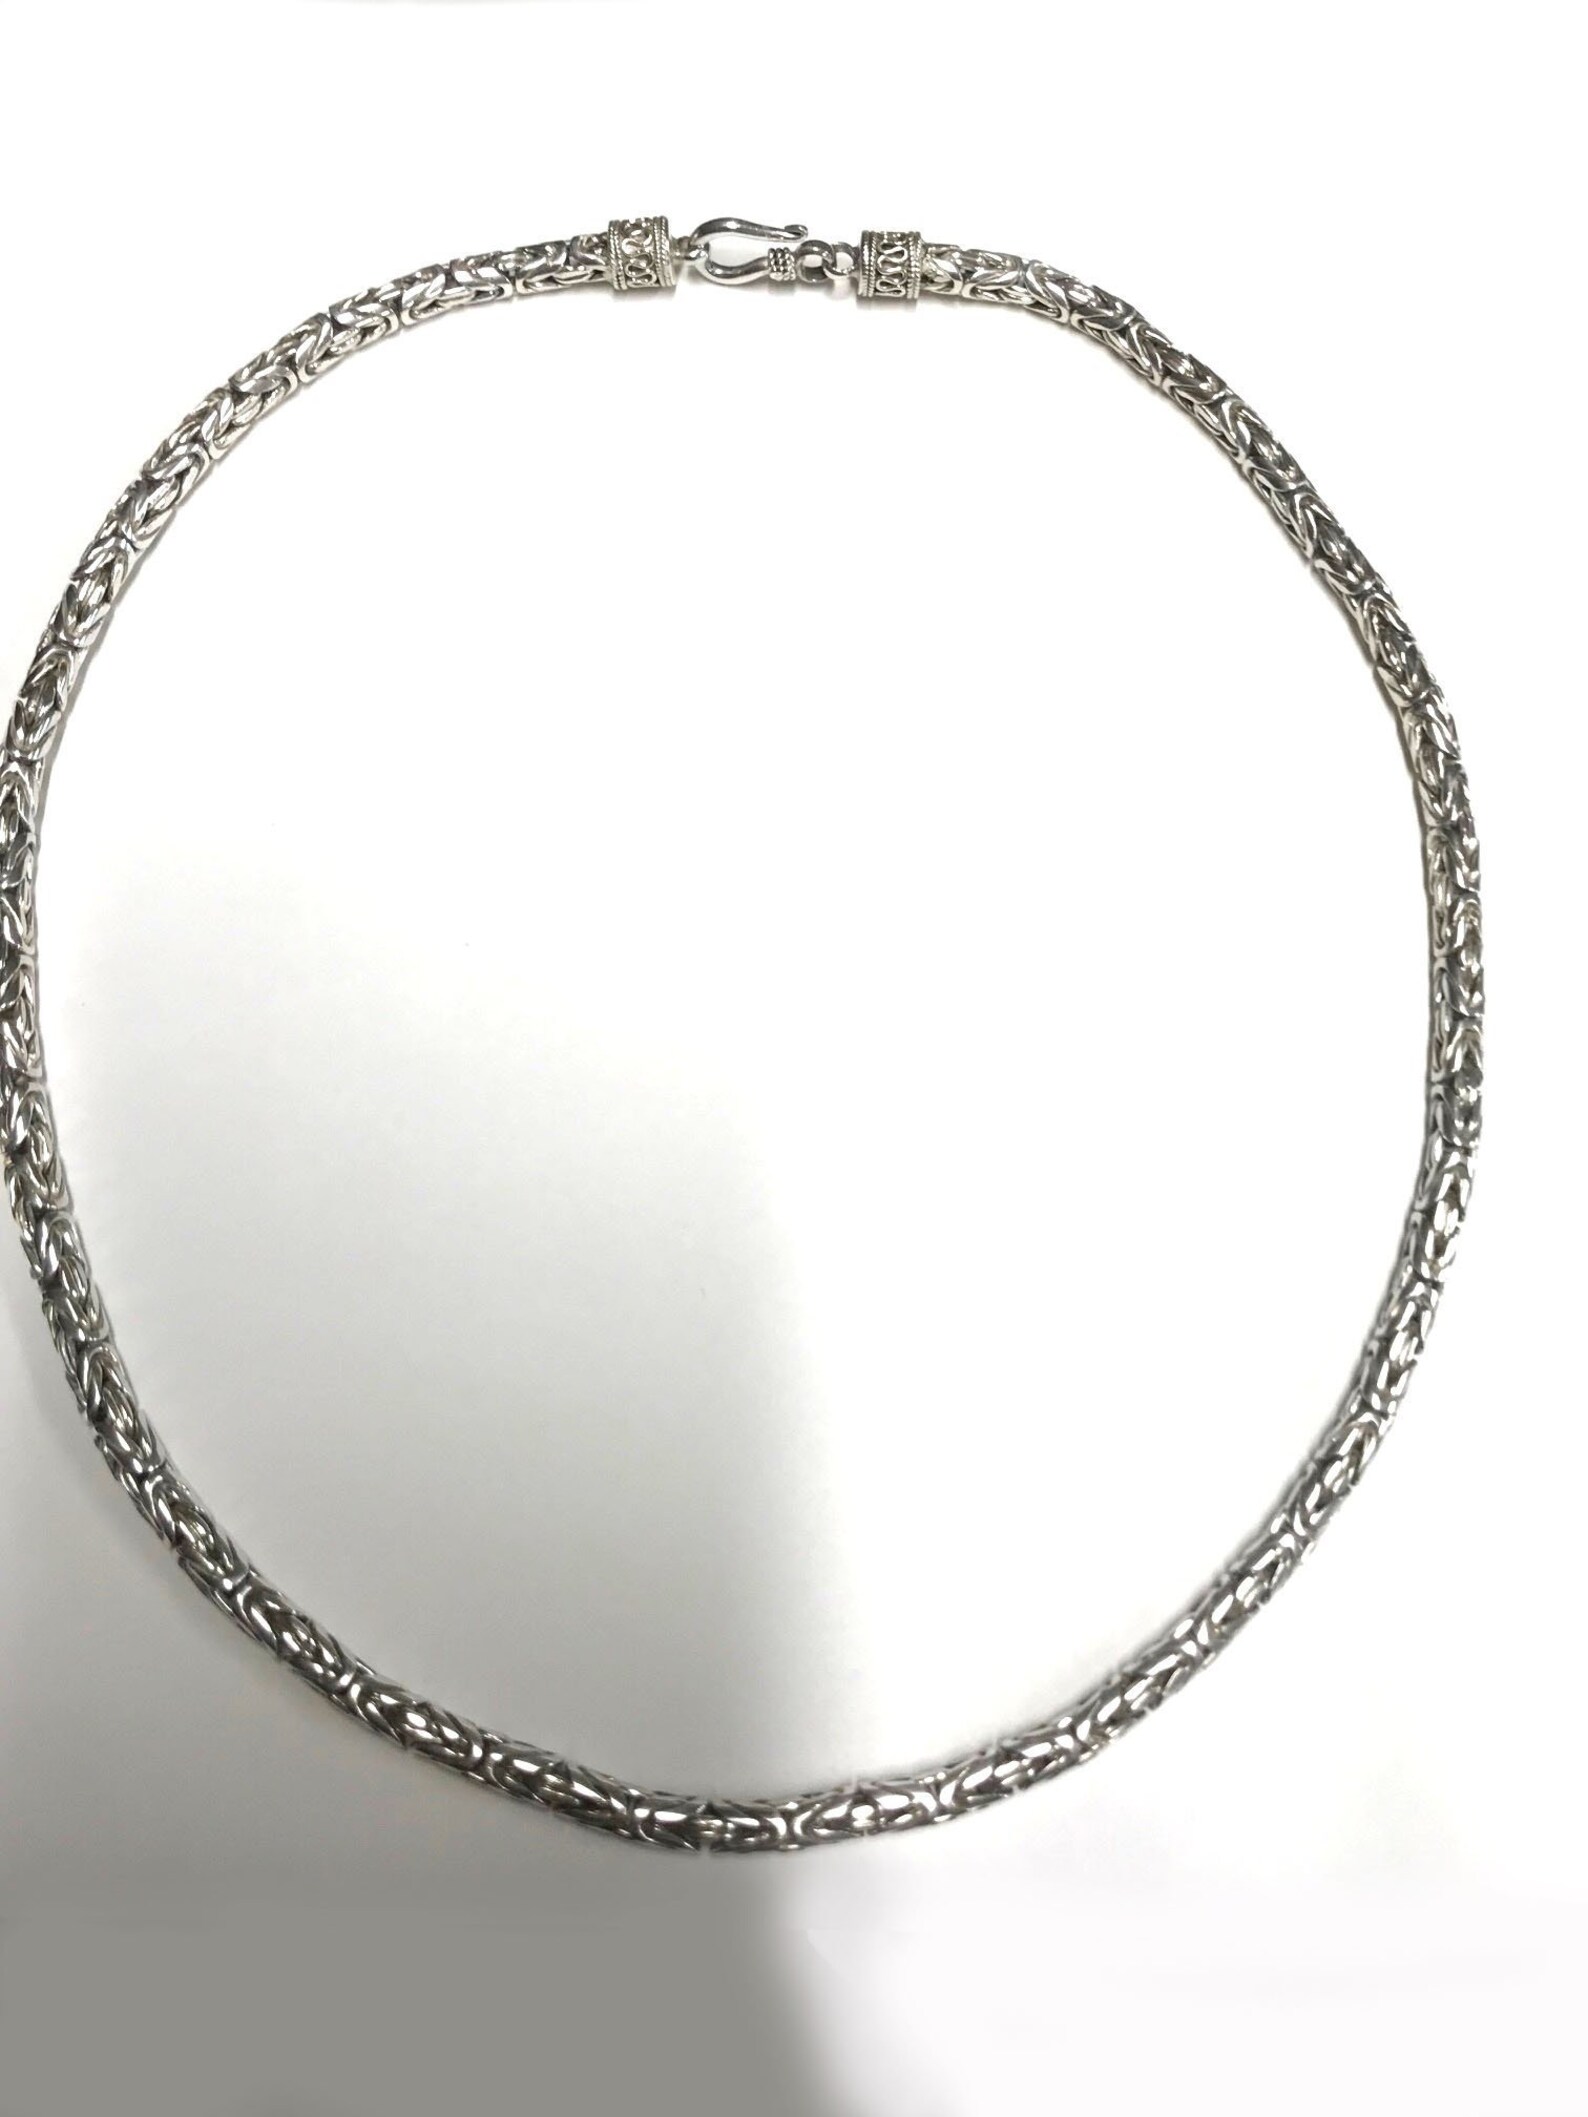 Turkish Round Chain Sterling Silver .925 Byzantine | Etsy